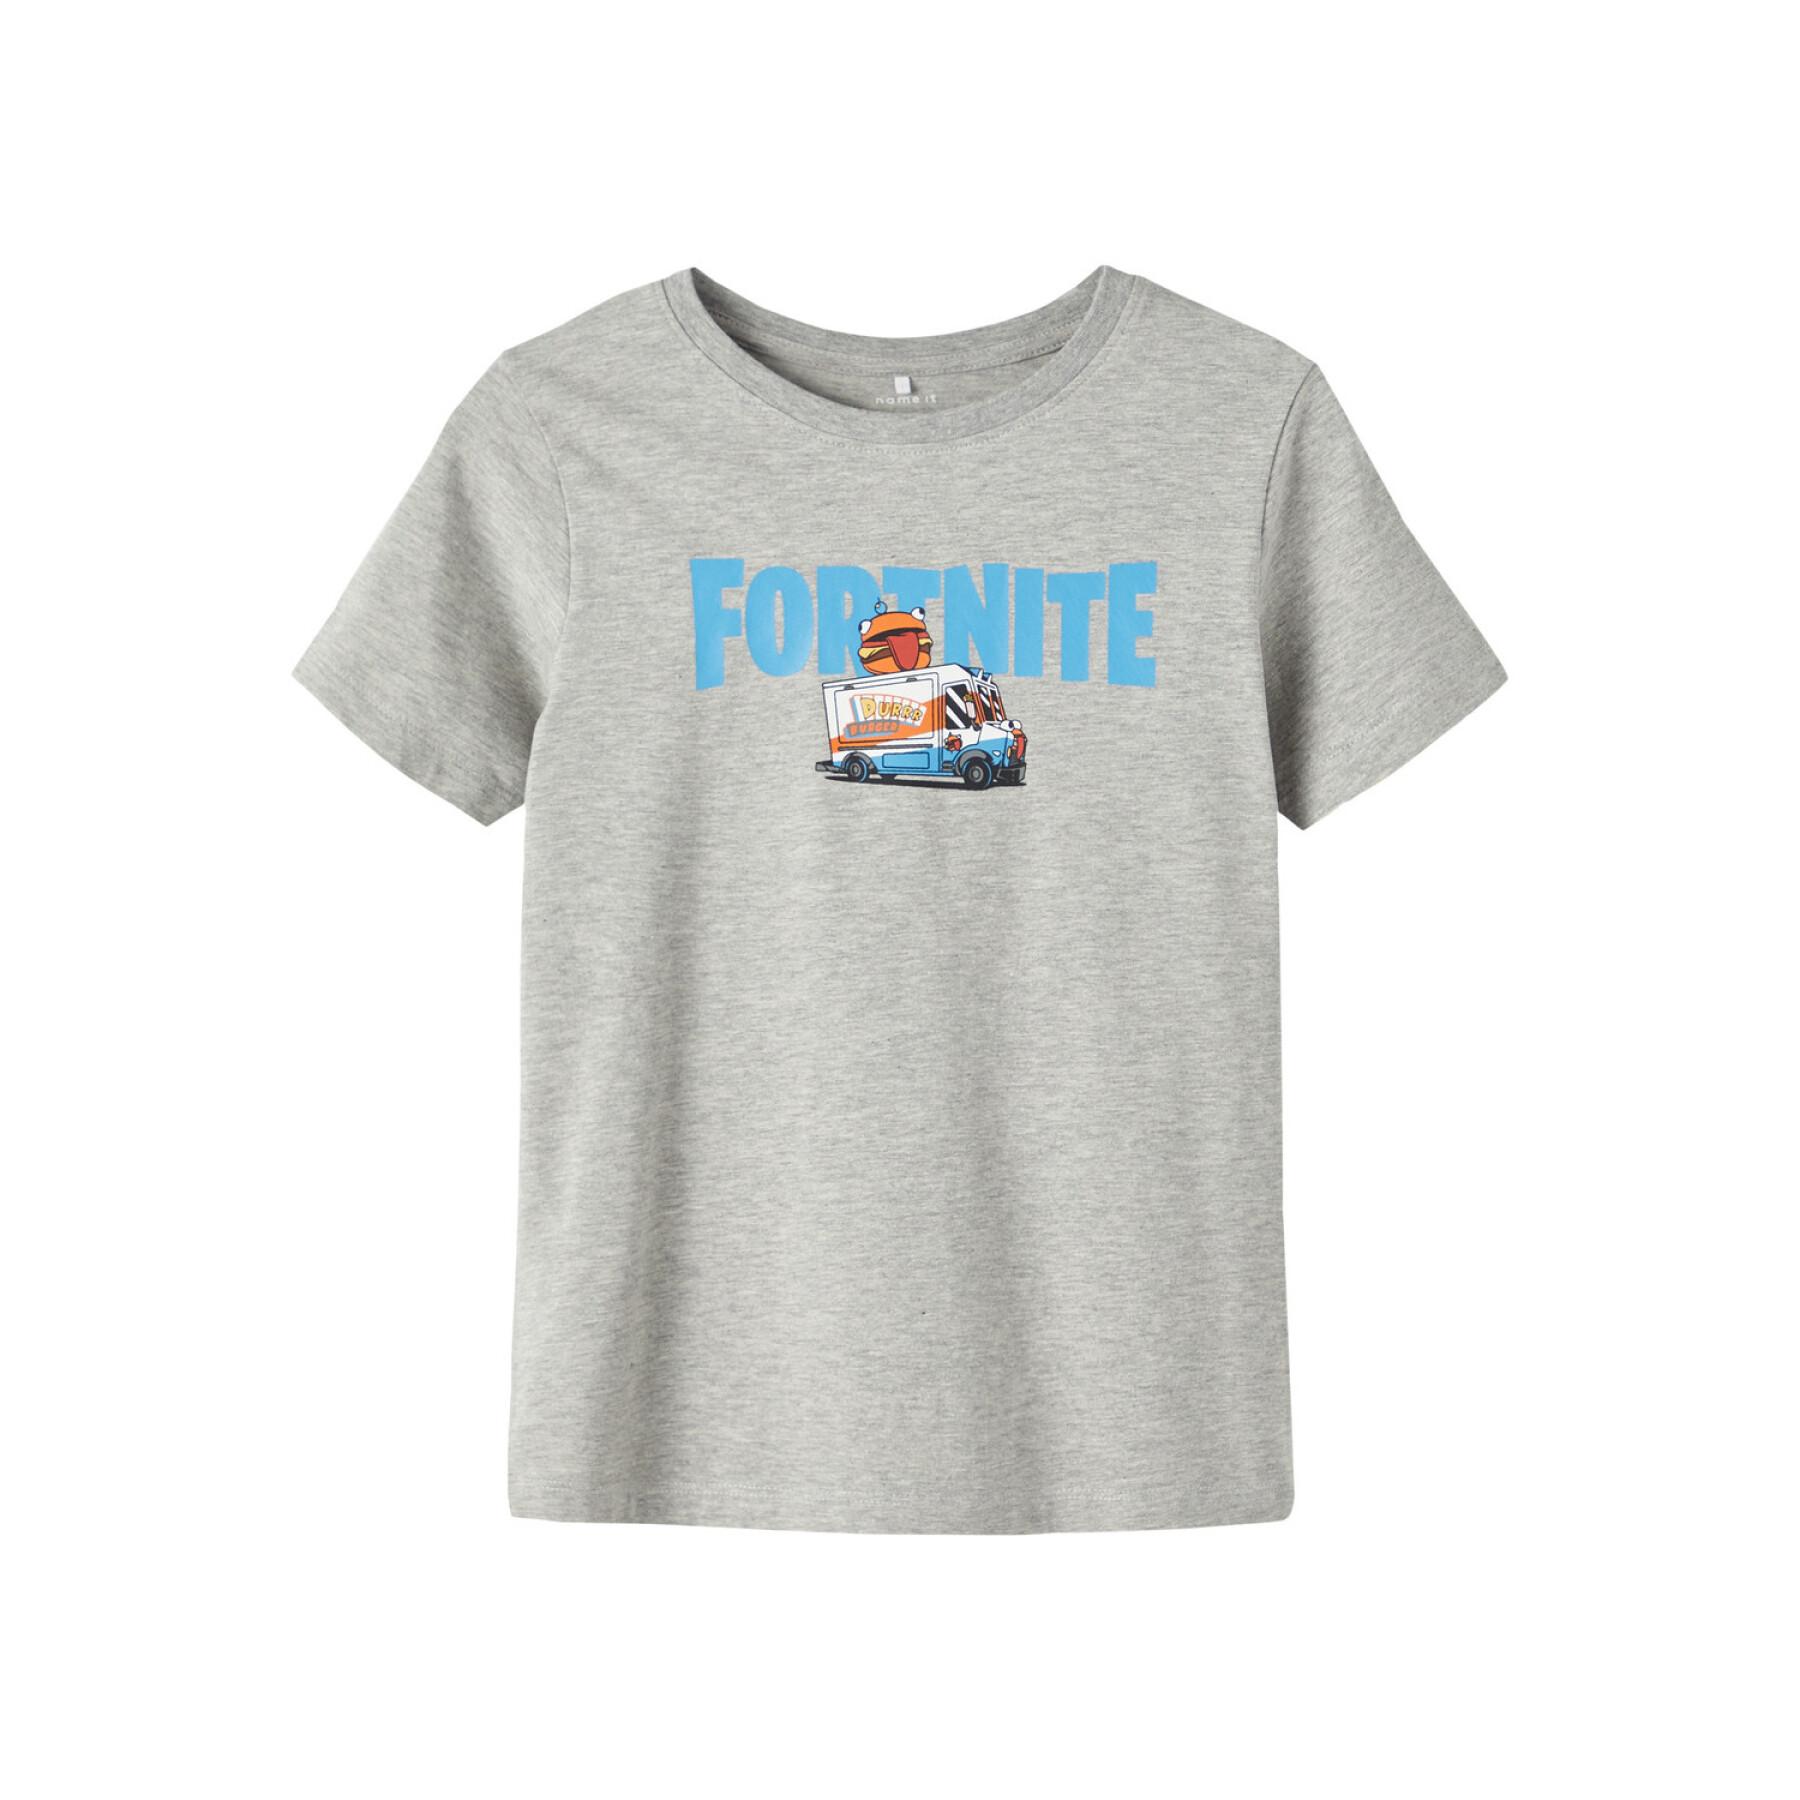 Koszulka dla dzieci Name it Alonso Fortnite